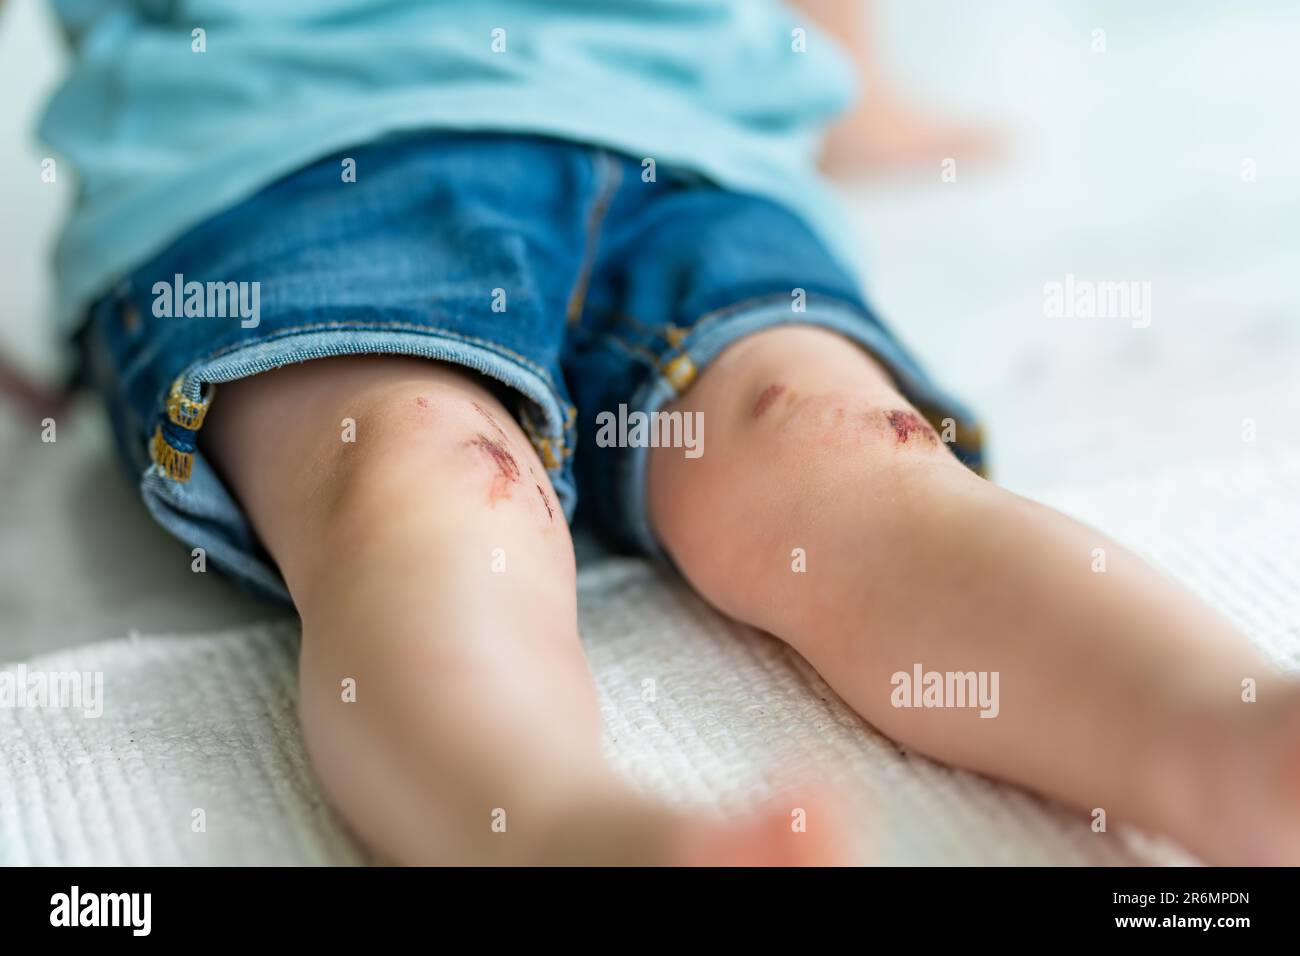 Ein kleiner Junge mit schmerzenden Kniescheiben. Eltern helfen ihrem Kind, eine erste-Hilfe-Knieverletzung durchzuführen, nachdem es einen Unfall hatte. Stockfoto